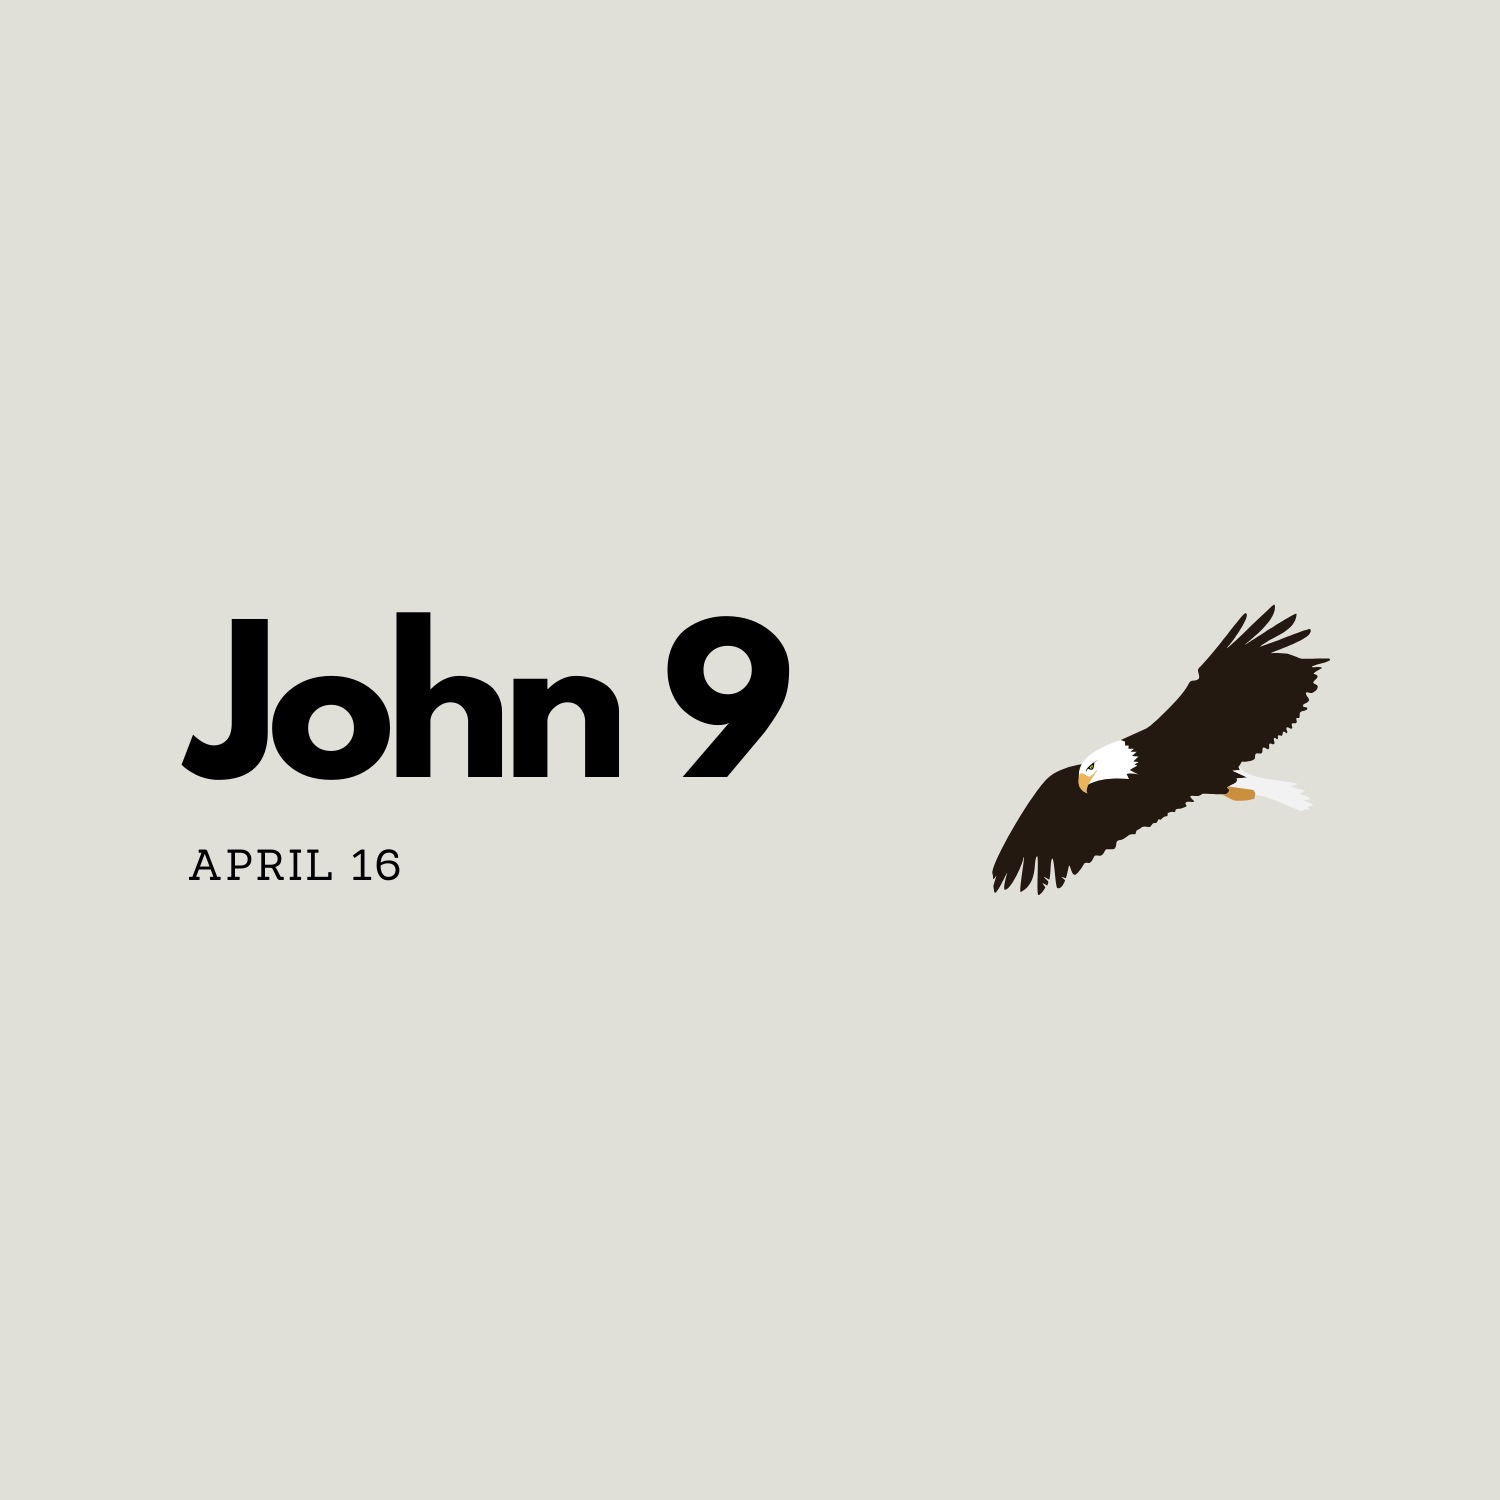 April 16: John 9